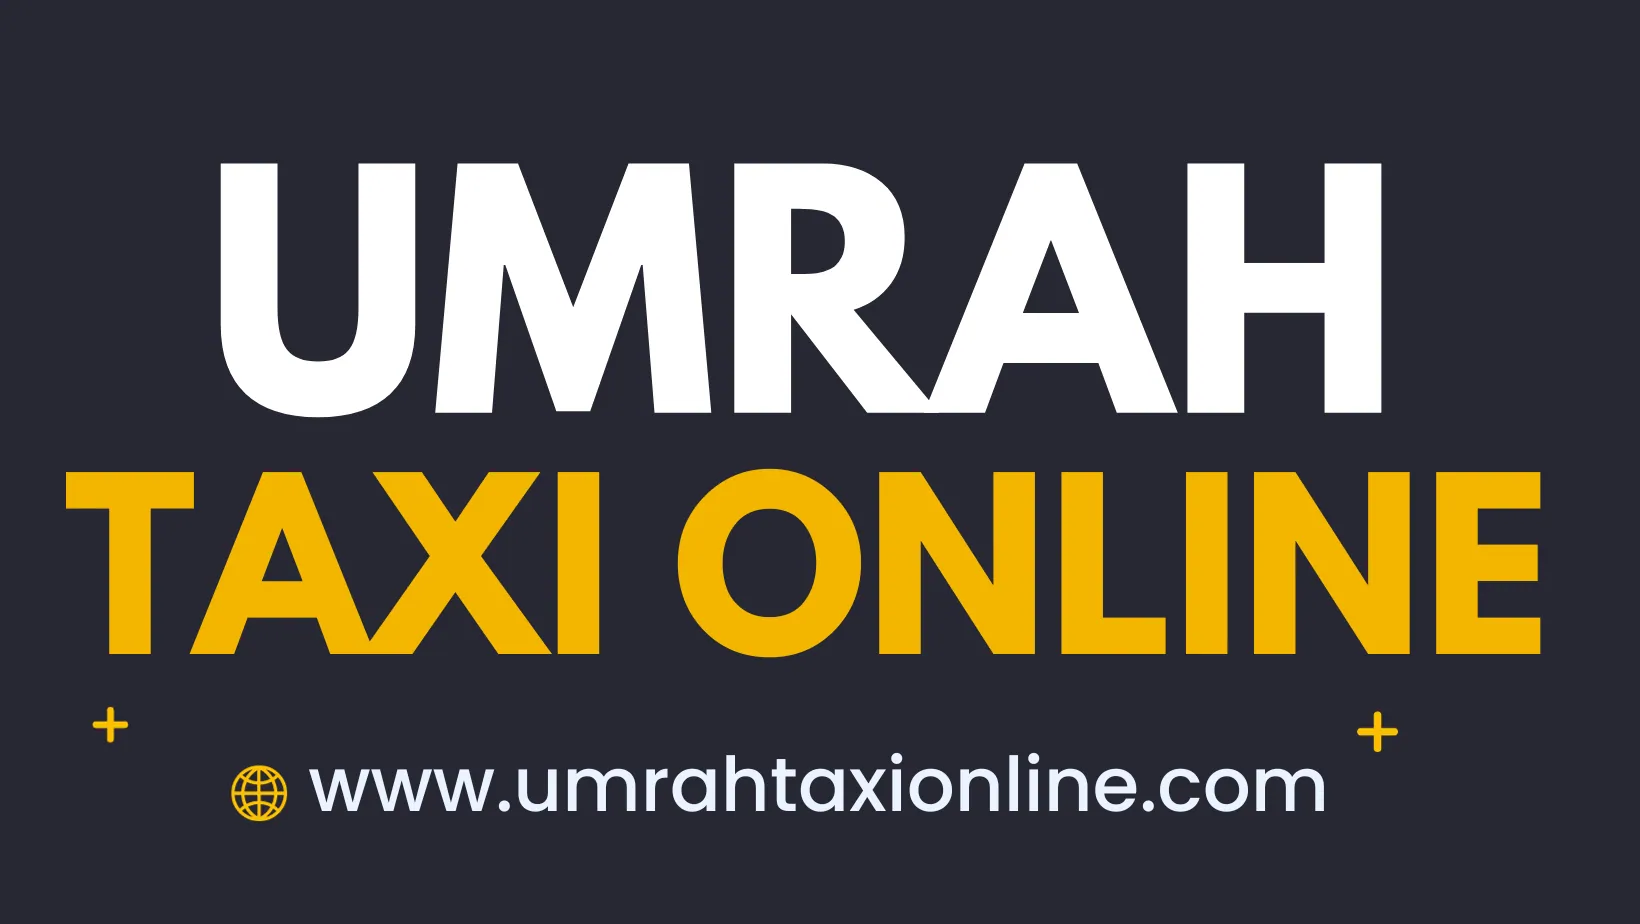 umrahtaxionline.com umrah taxi service umrah taxi